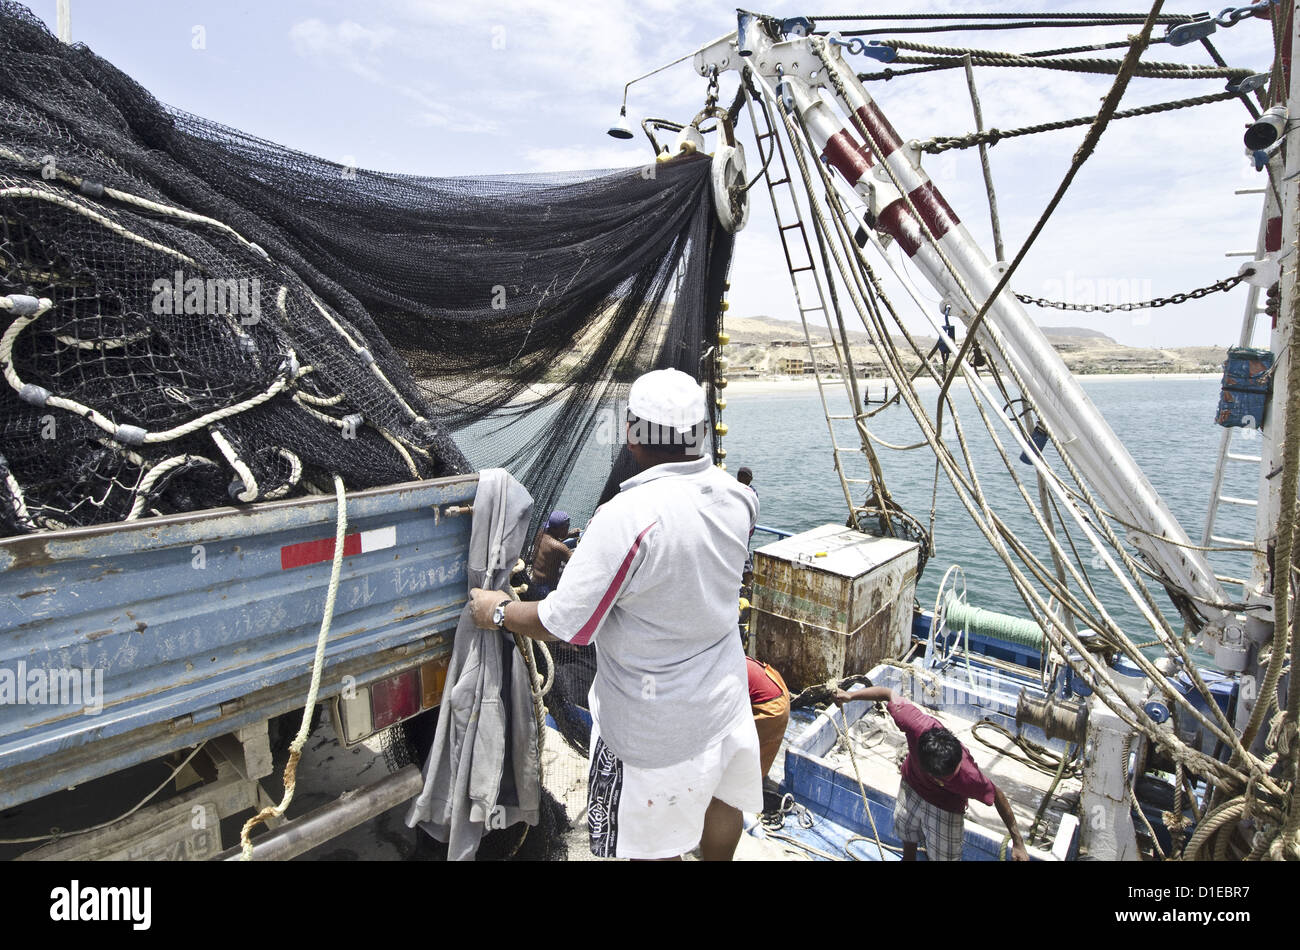 Fatto tutto artigianelmente pescherecci con reti a circuizione noto come boliche barche sono una prassi comune per il Latino Amereican costa del Pacifico, Perù Foto Stock